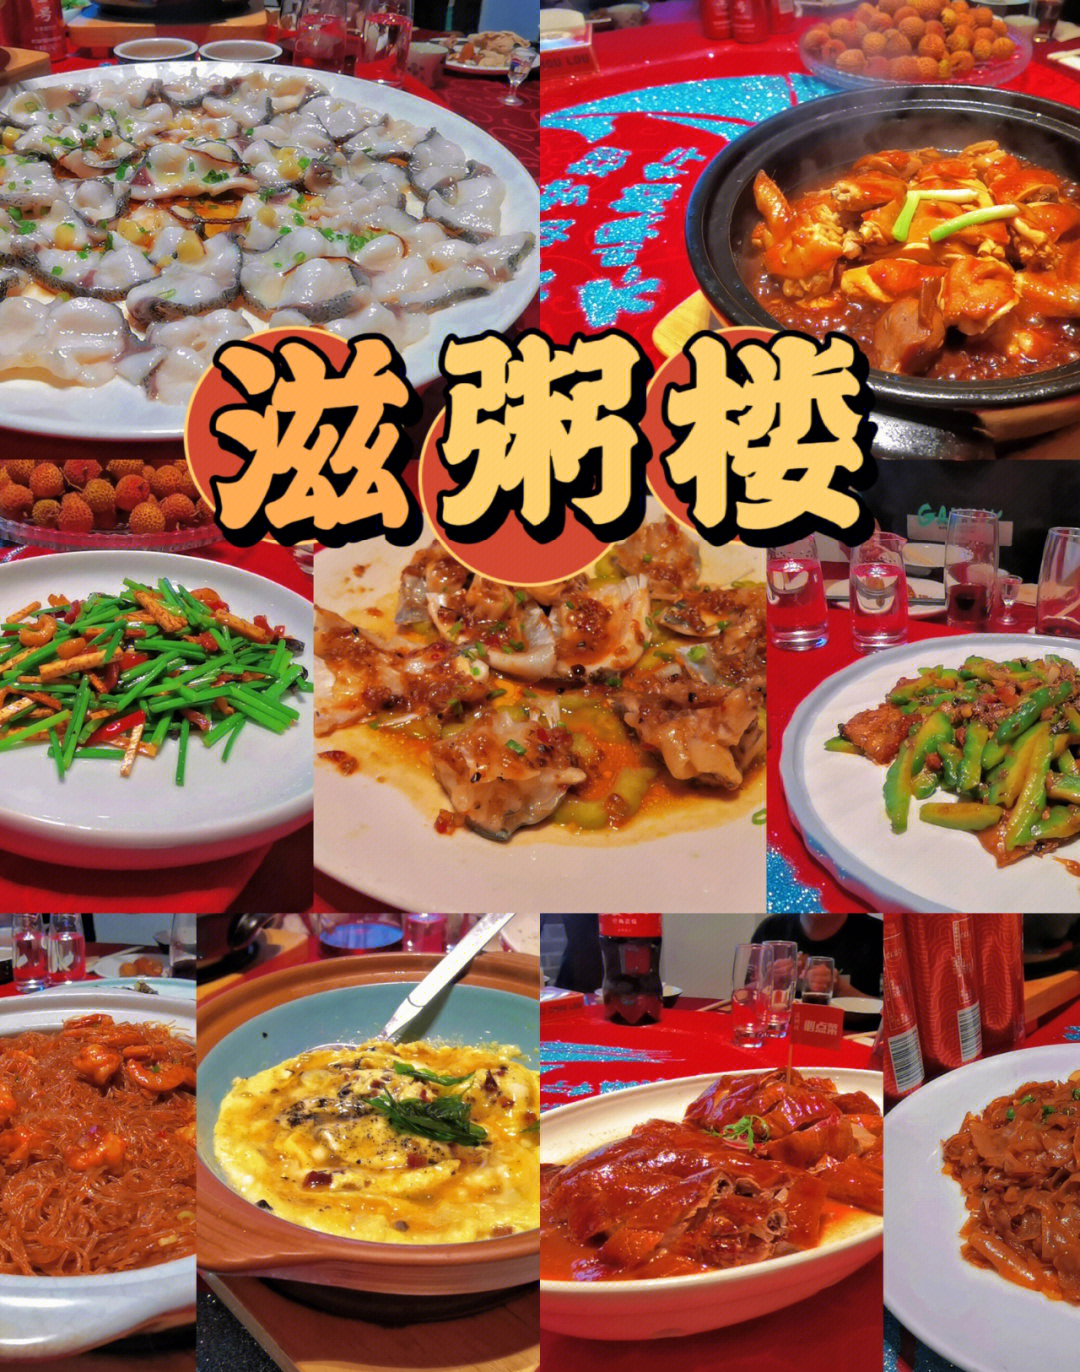 广州禧悦楼菜单图片